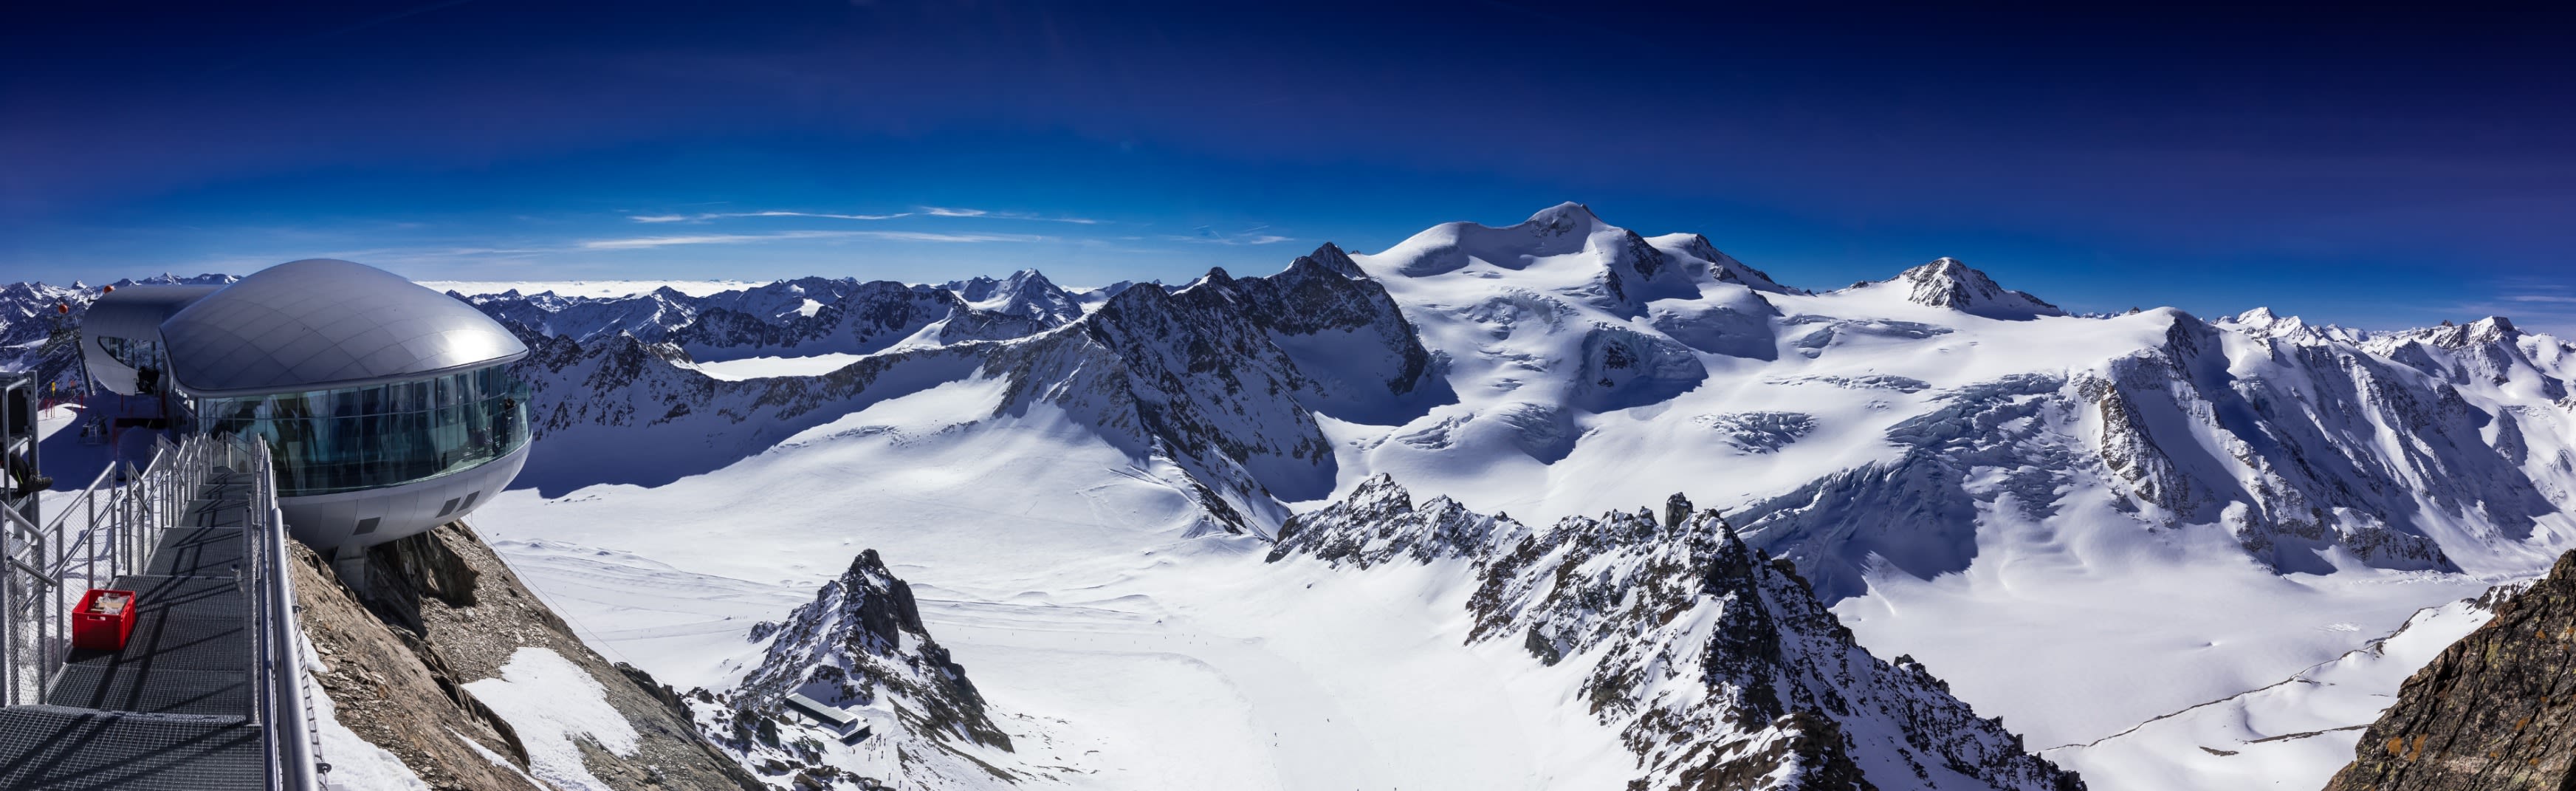 Vanaf de Pitztaler gletsjer heb je een schitterend panorama view. Foto: Adobe Stock / markus_schelhorn